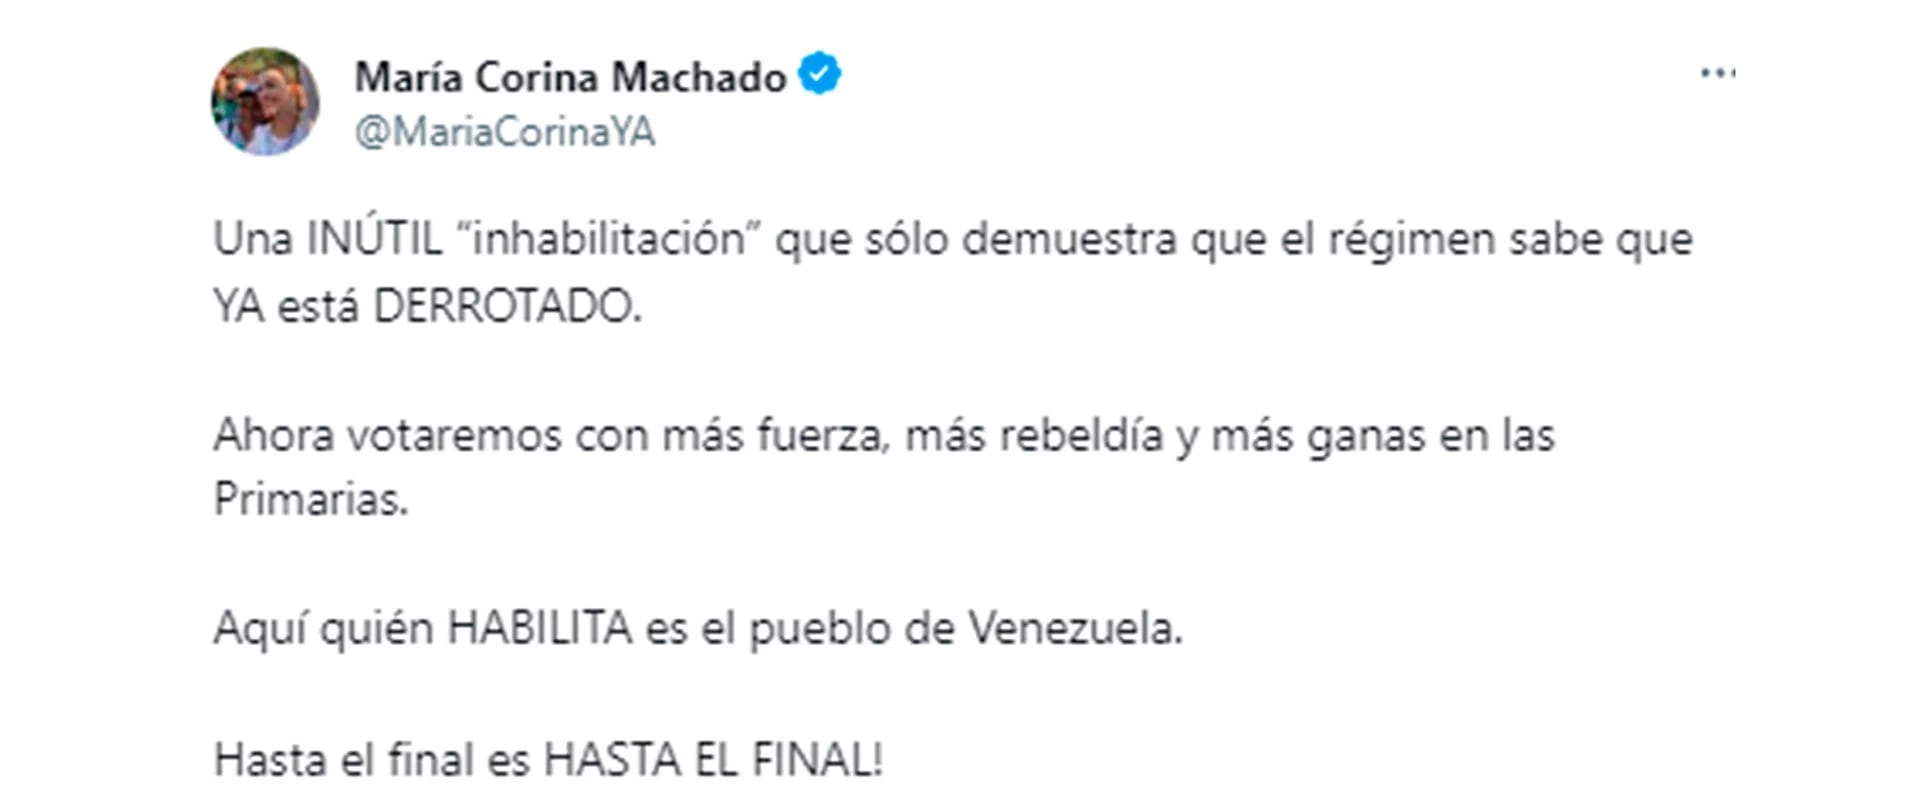 El mensaje de María Corina Machado en Twitter